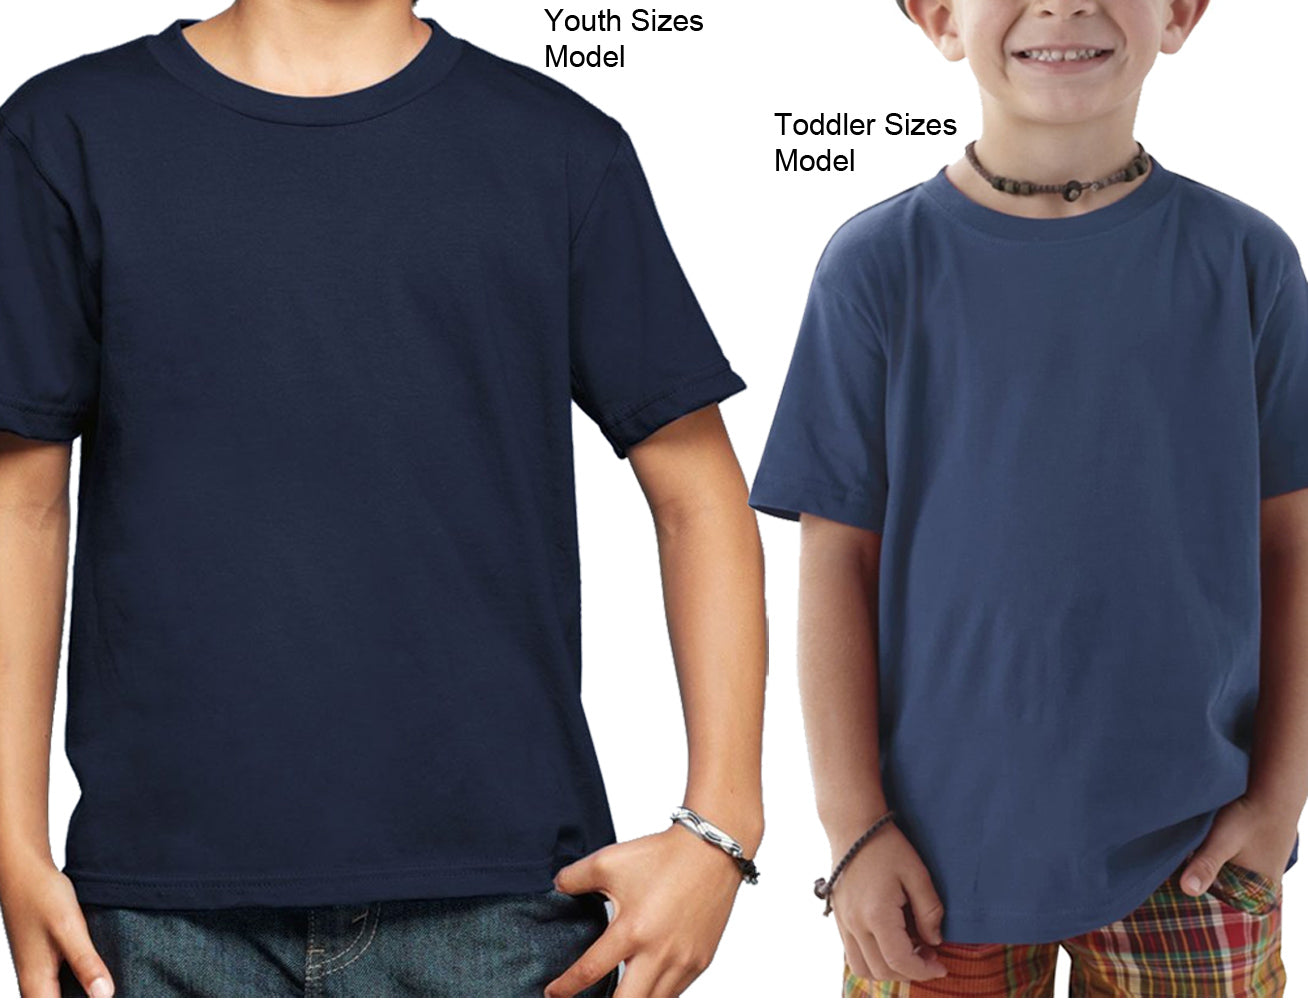 Youth Kraken Shirt 